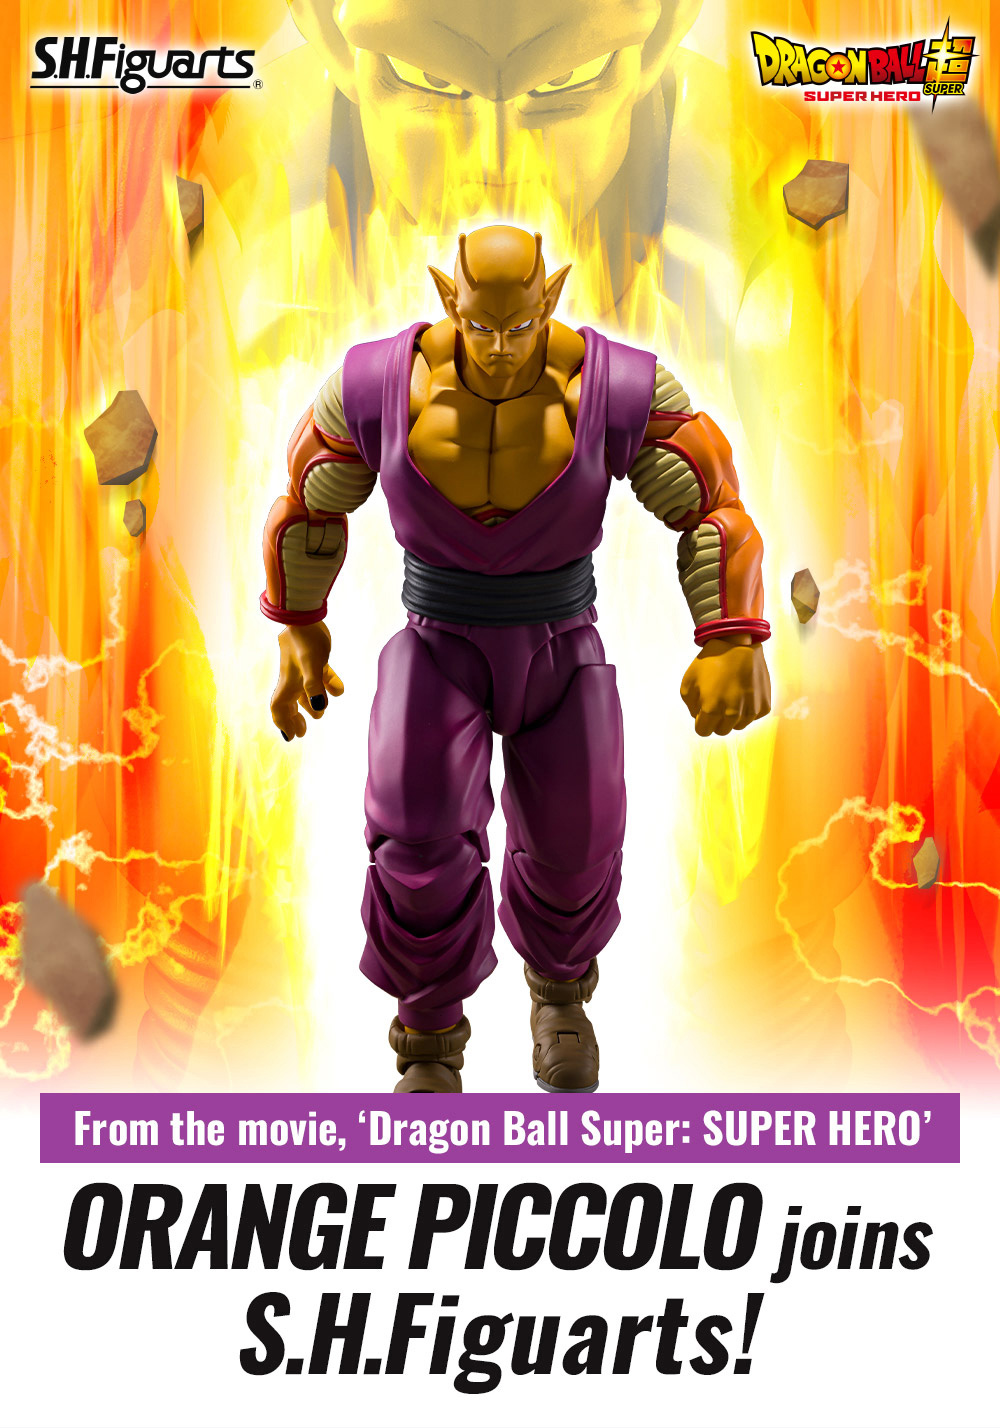 From the movie, ‘Dragon Ball Super: SUPER HERO’ ORANGE PICCOLO joins S.H.Figuarts!